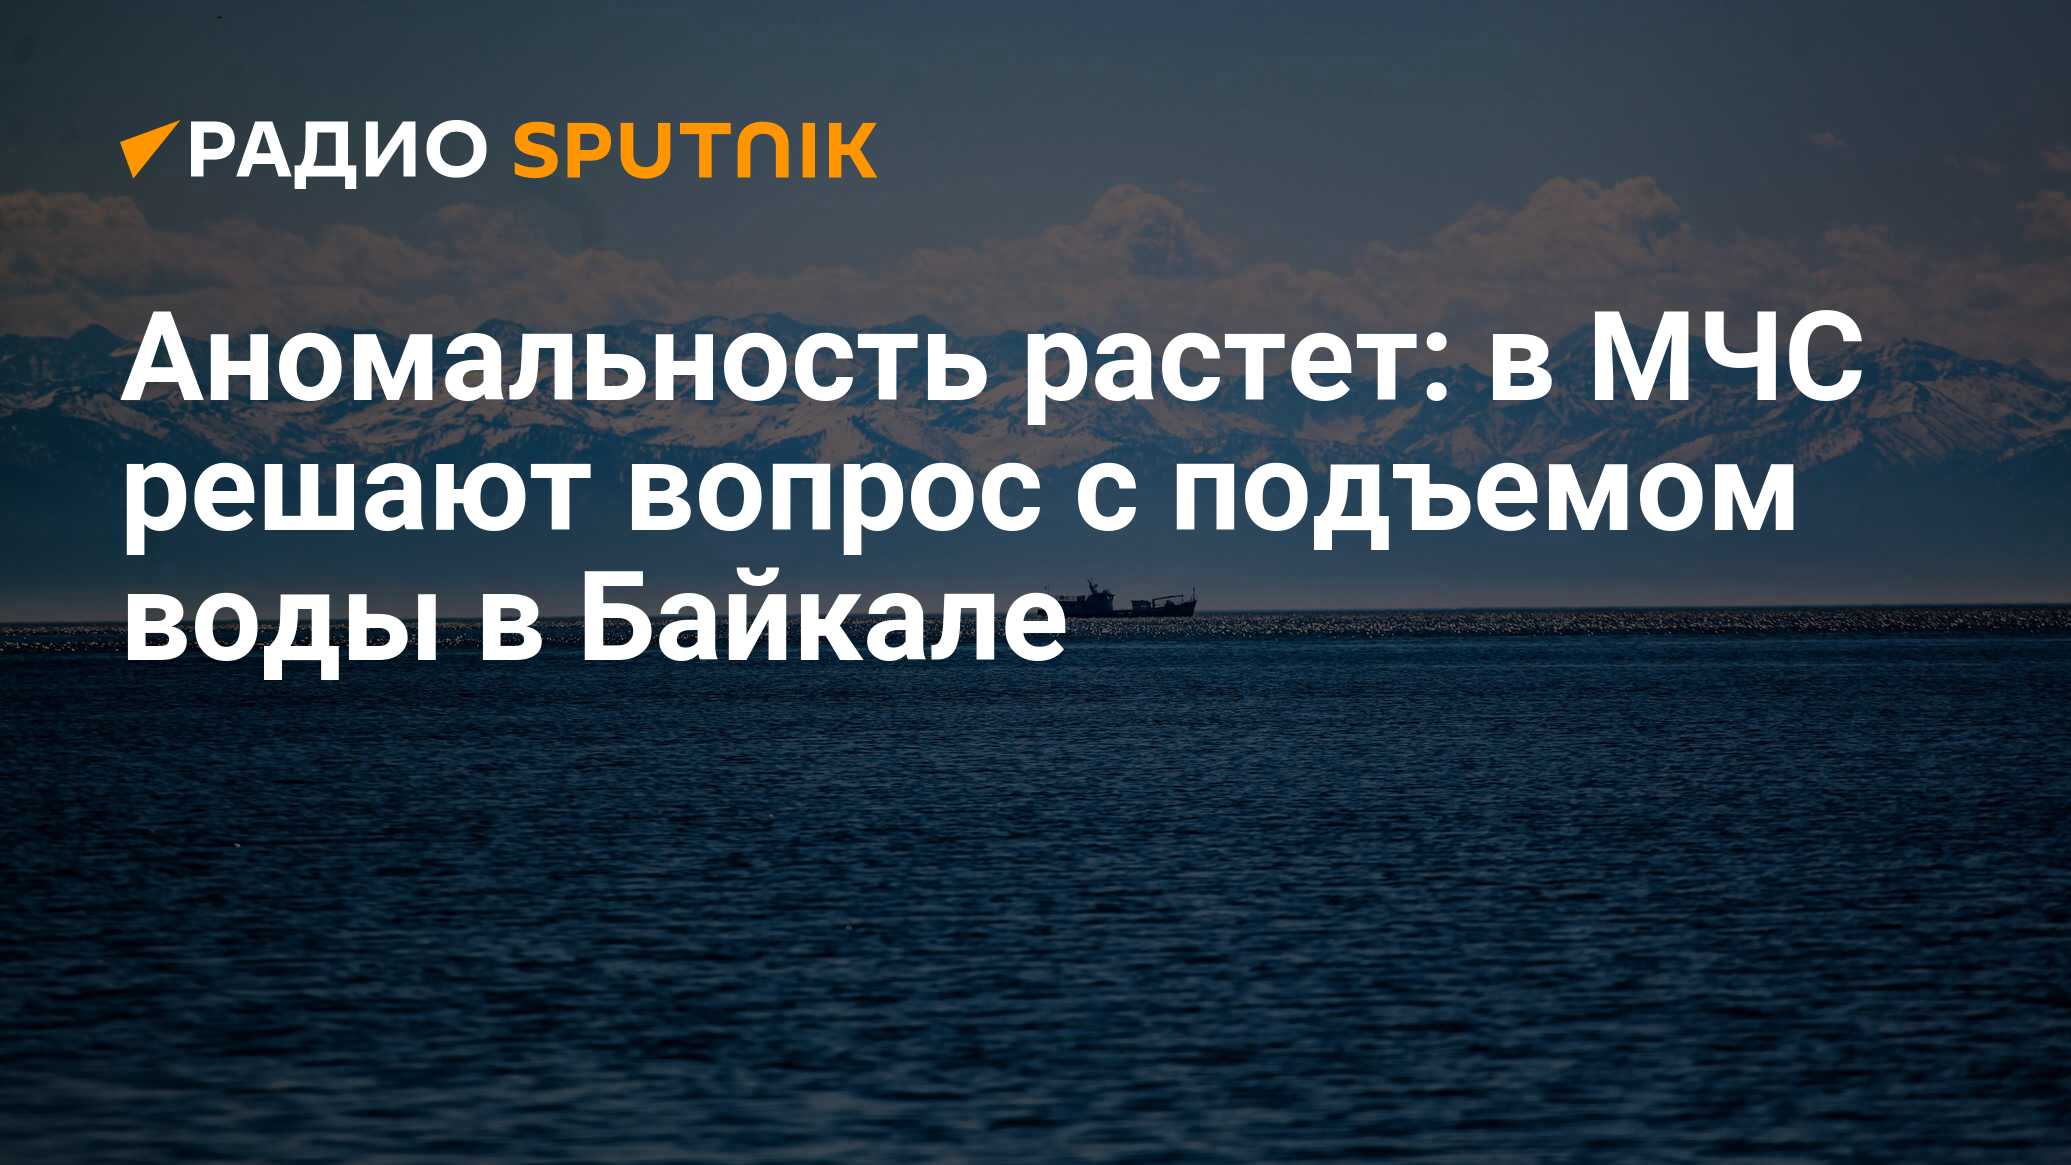 Тип питания озера Байкал